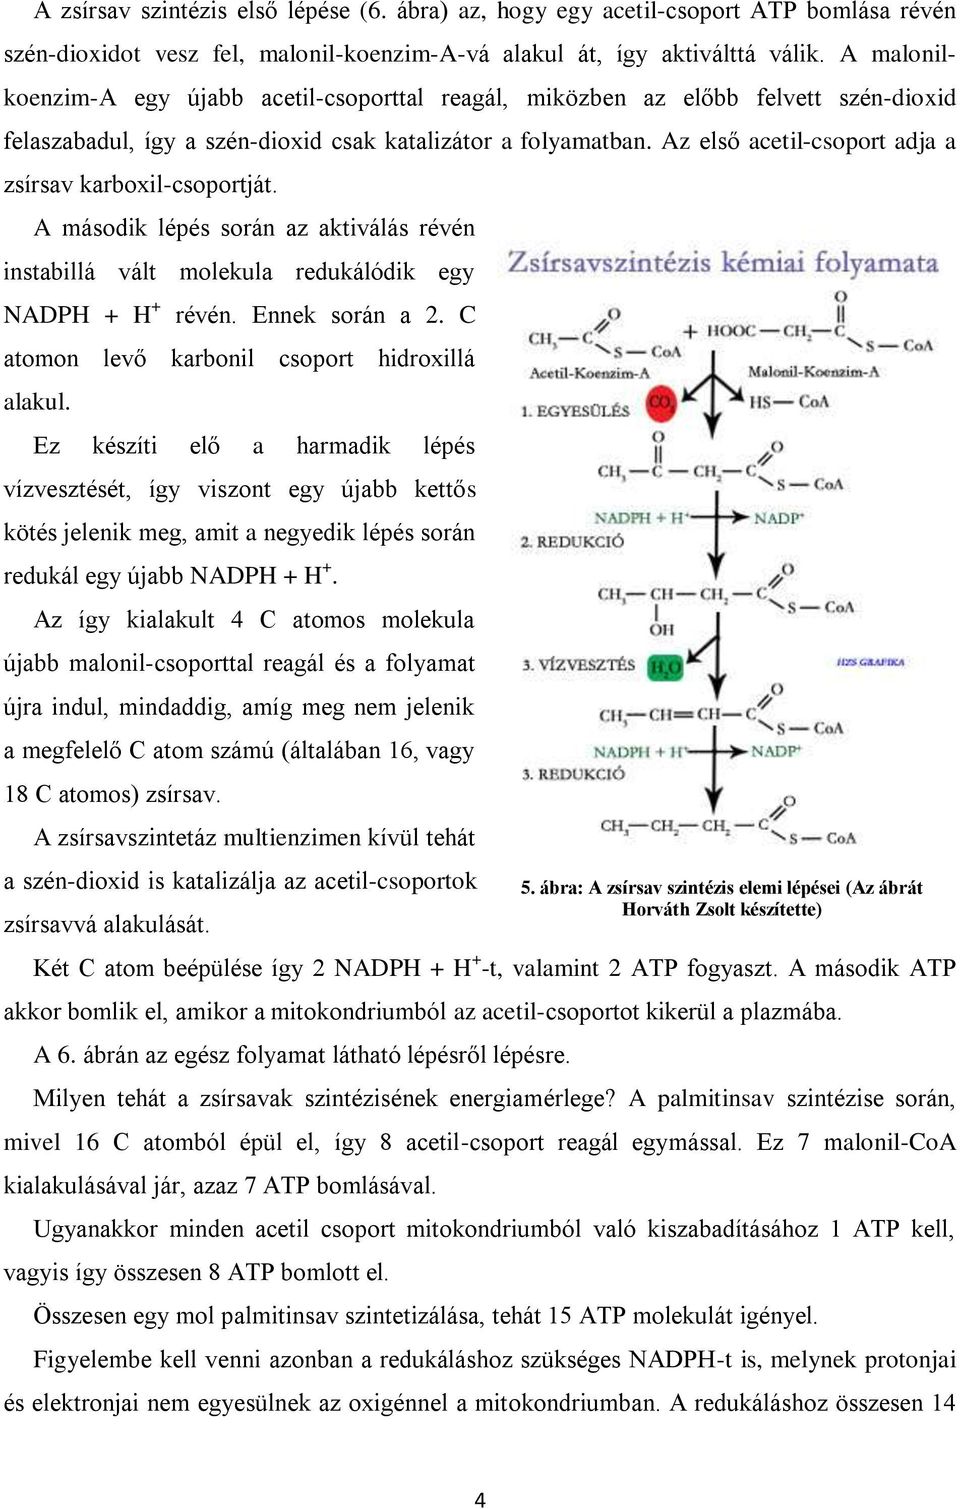 Az első acetil-csoport adja a zsírsav karboxil-csoportját. A második lépés során az aktiválás révén instabillá vált molekula redukálódik egy NADPH + H + révén. Ennek során a 2.